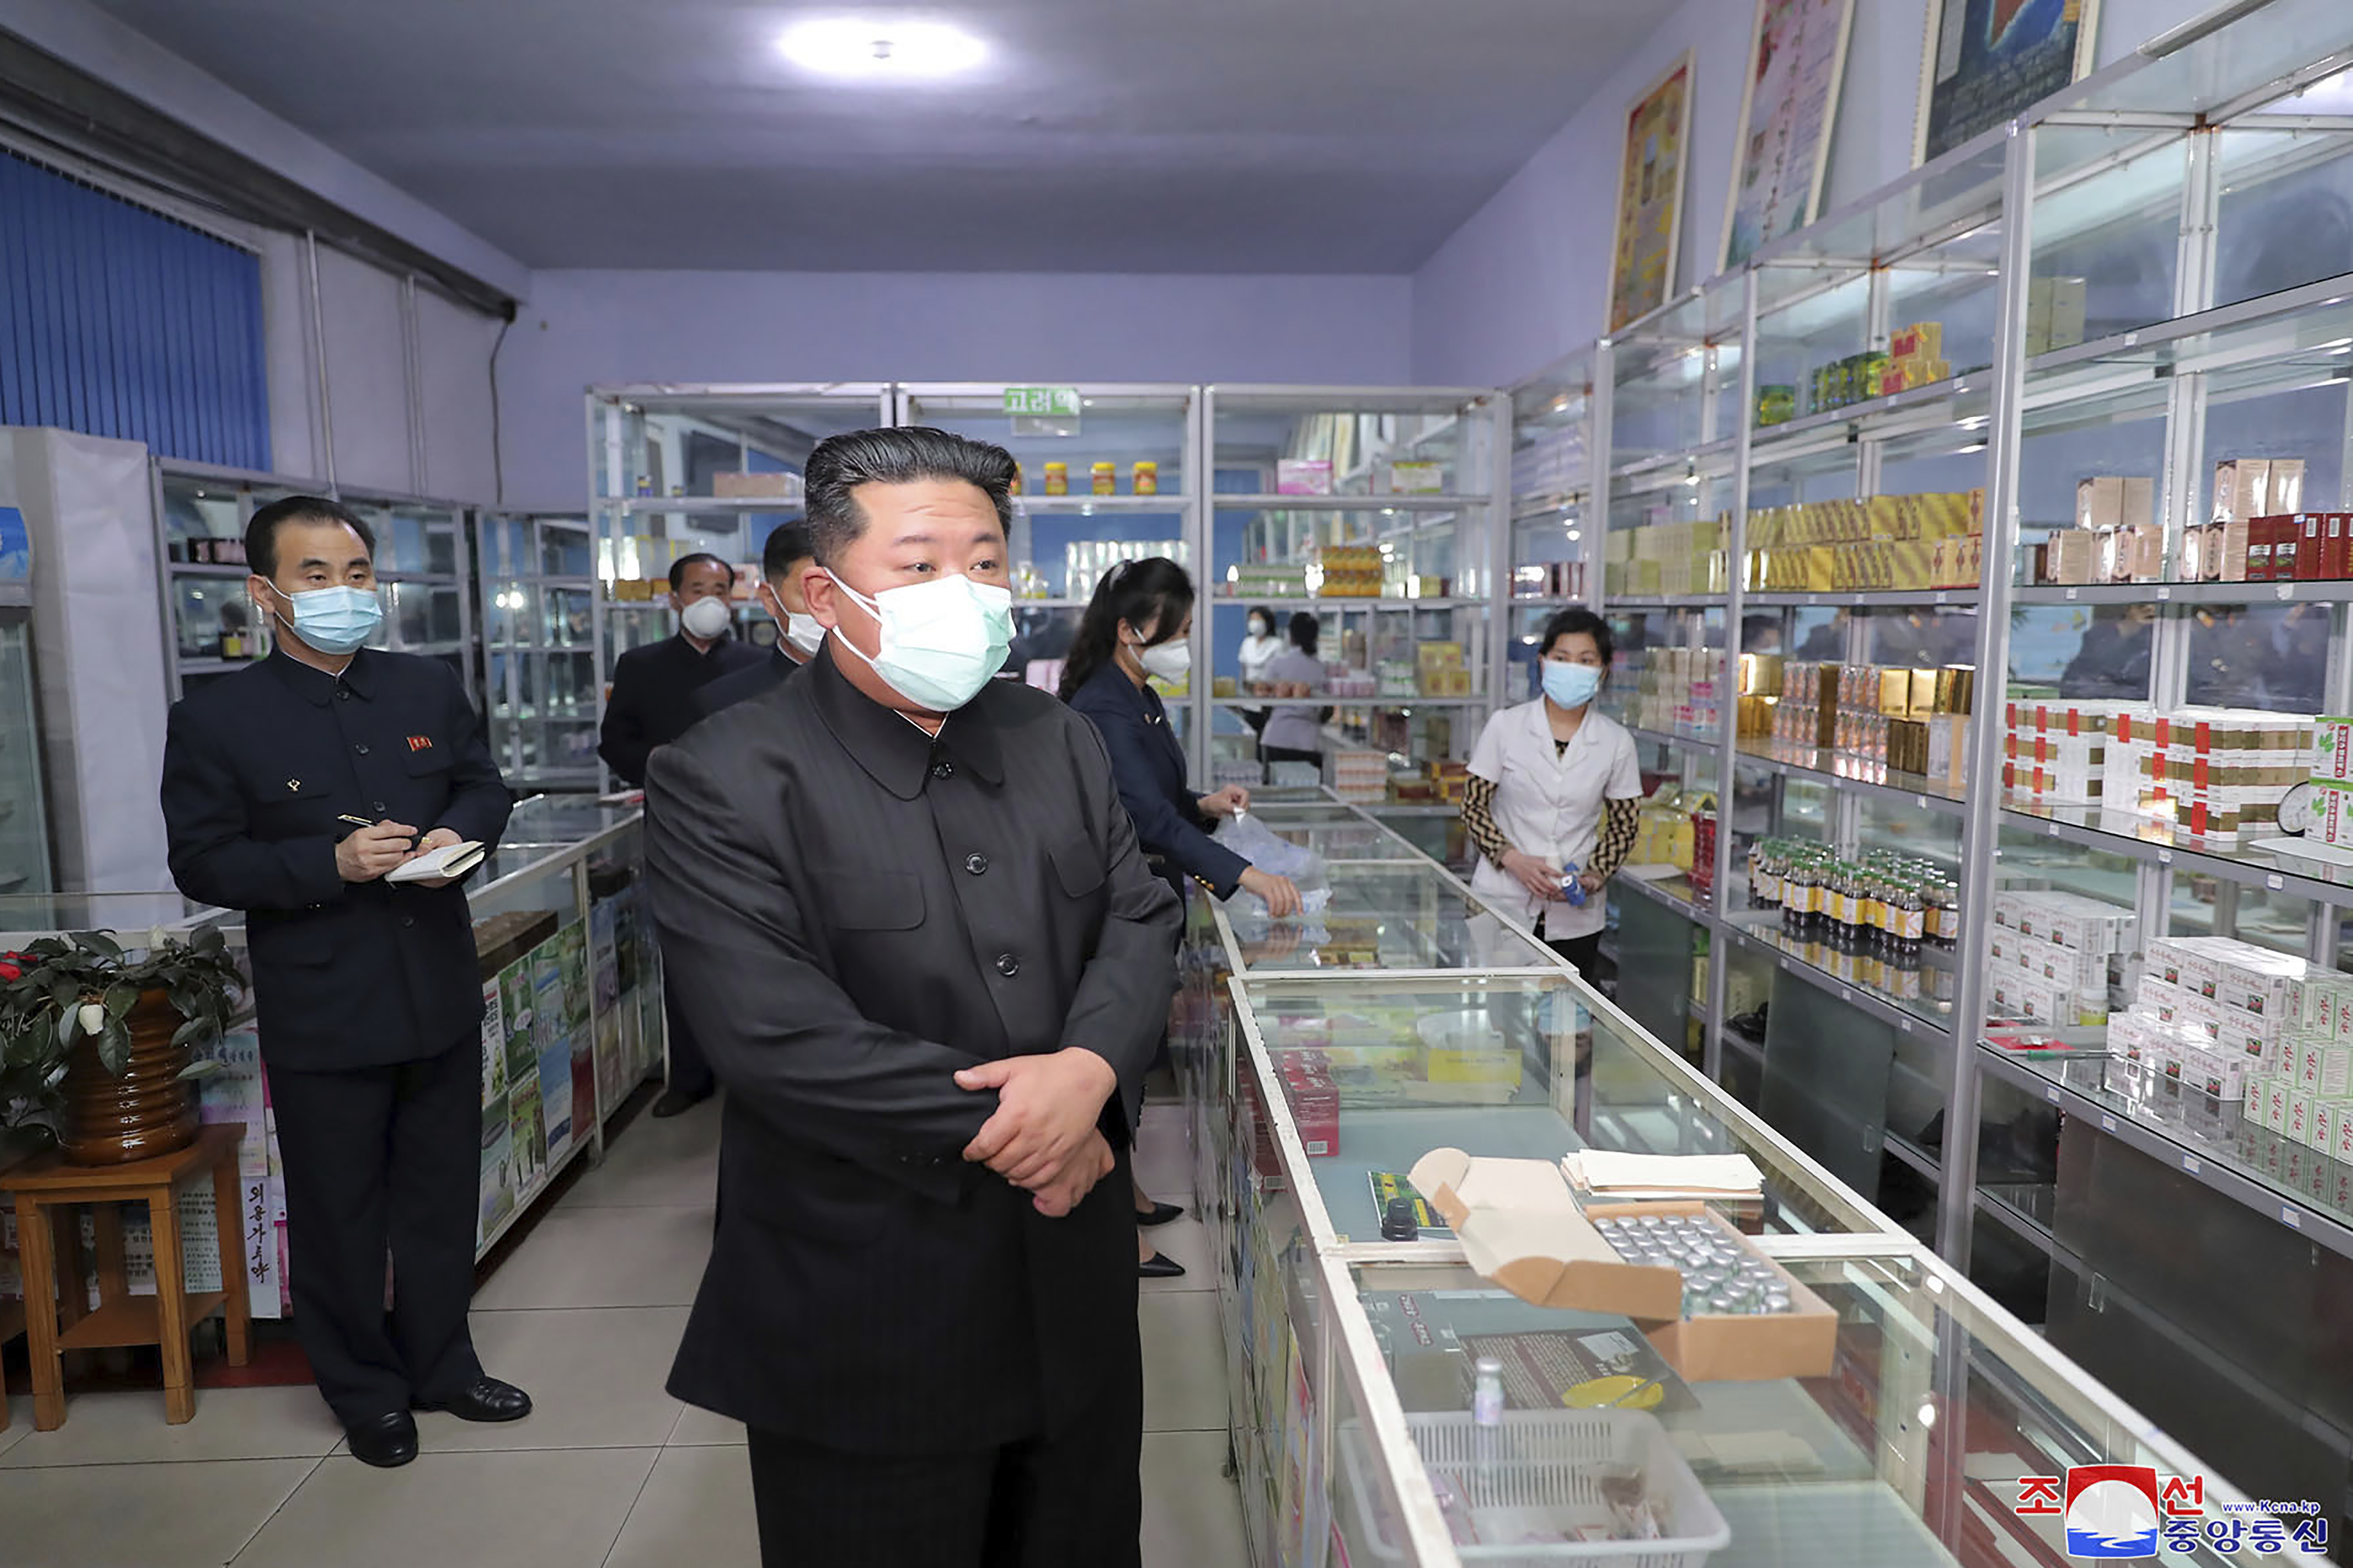 Kim Jong Un visita una farmacia en Pyongyang (Agencia Central de Noticias de Corea/Servicio de Noticias de Corea vía AP)